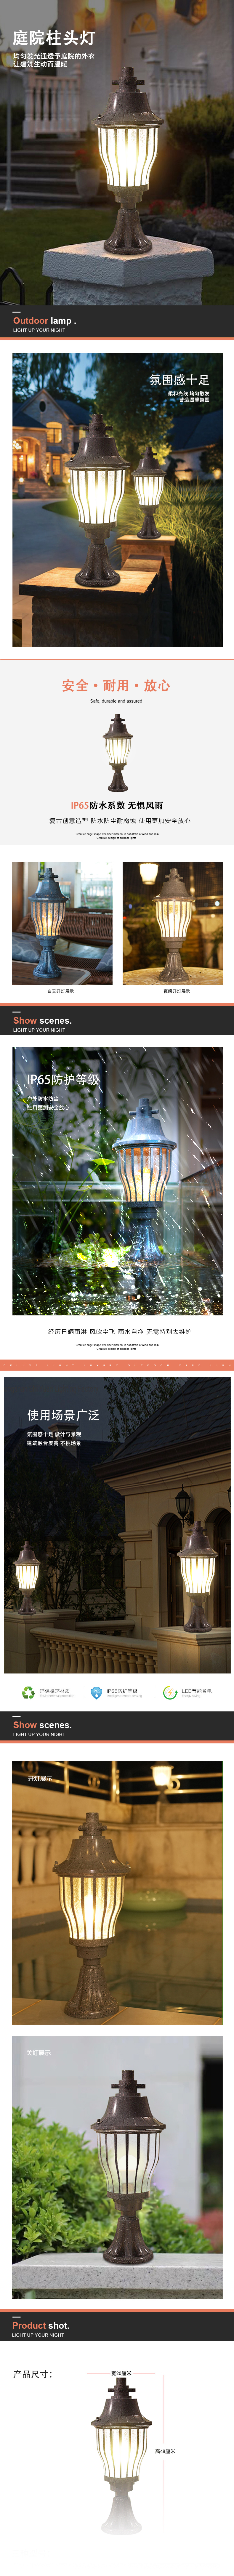 淘宝美工xiao小羊庭院柱头灯院子氛围装饰灯作品